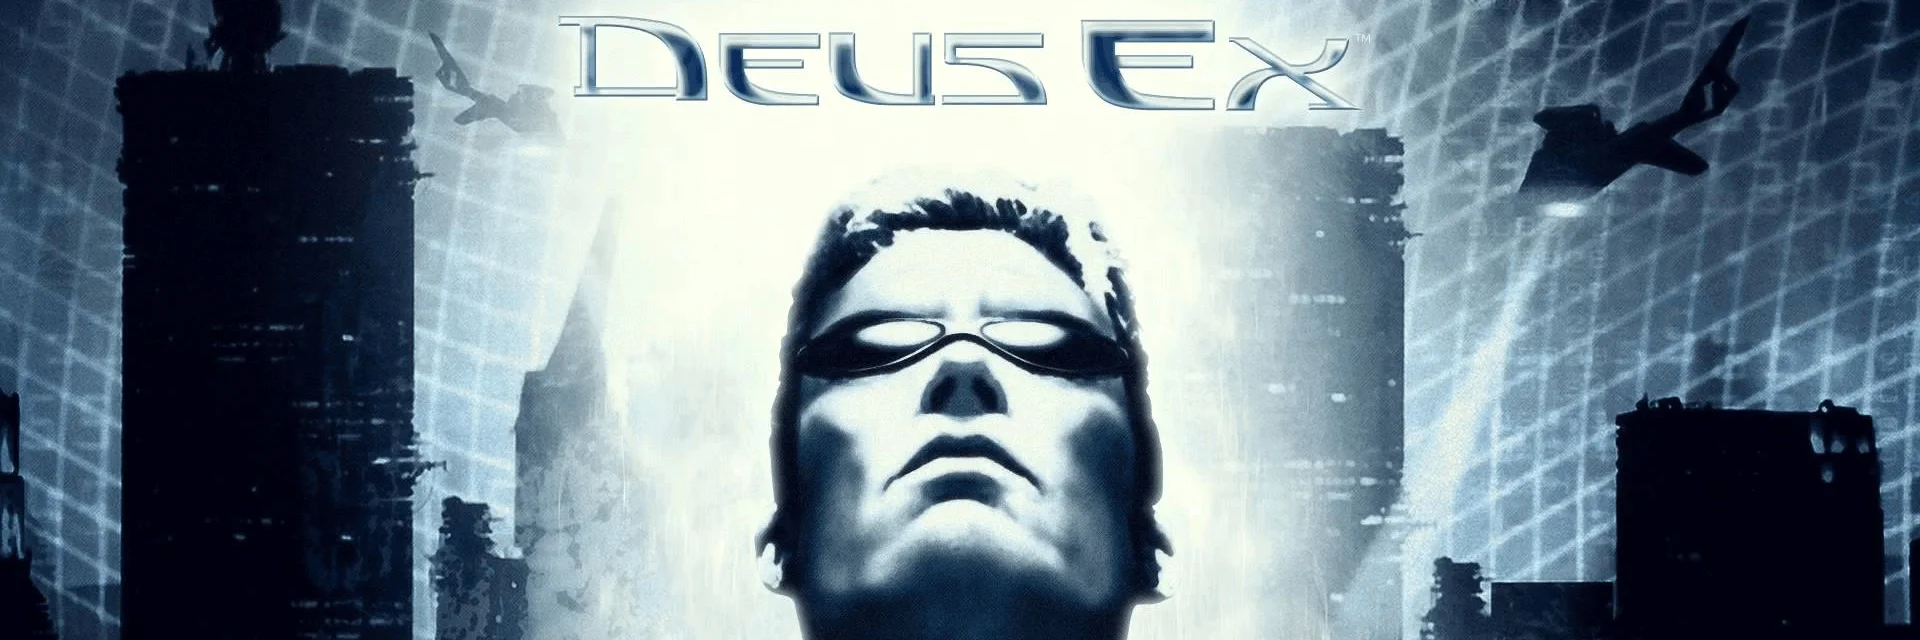 История разработки и мир Deus Ex.